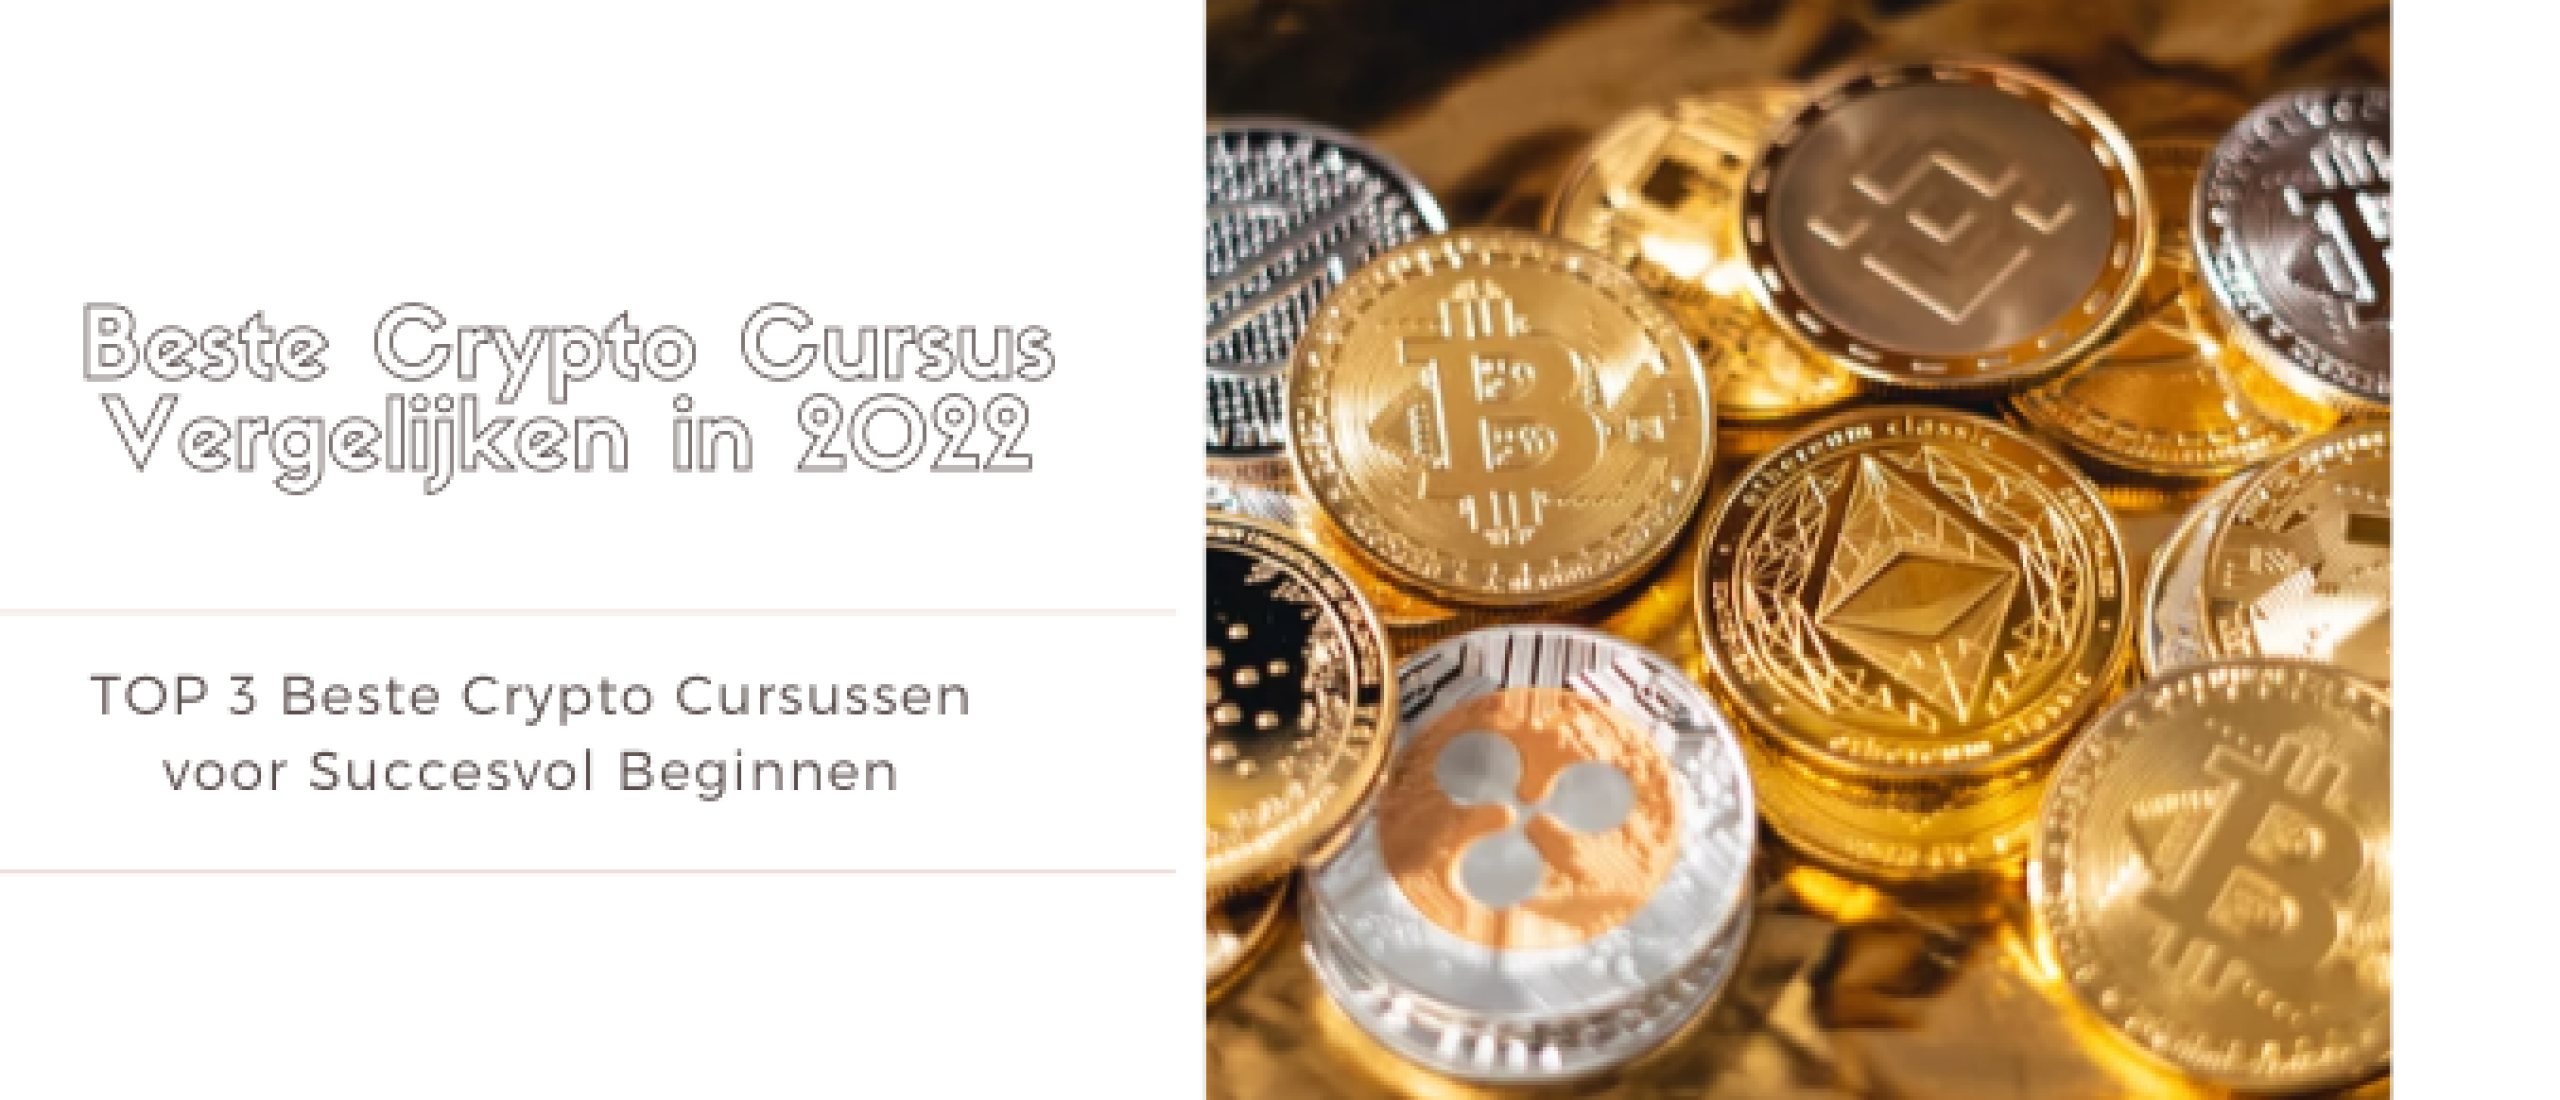 Crypto Cursus Vergelijken [2023] TOP 3 Beste Keuzes | LOISIR.nl